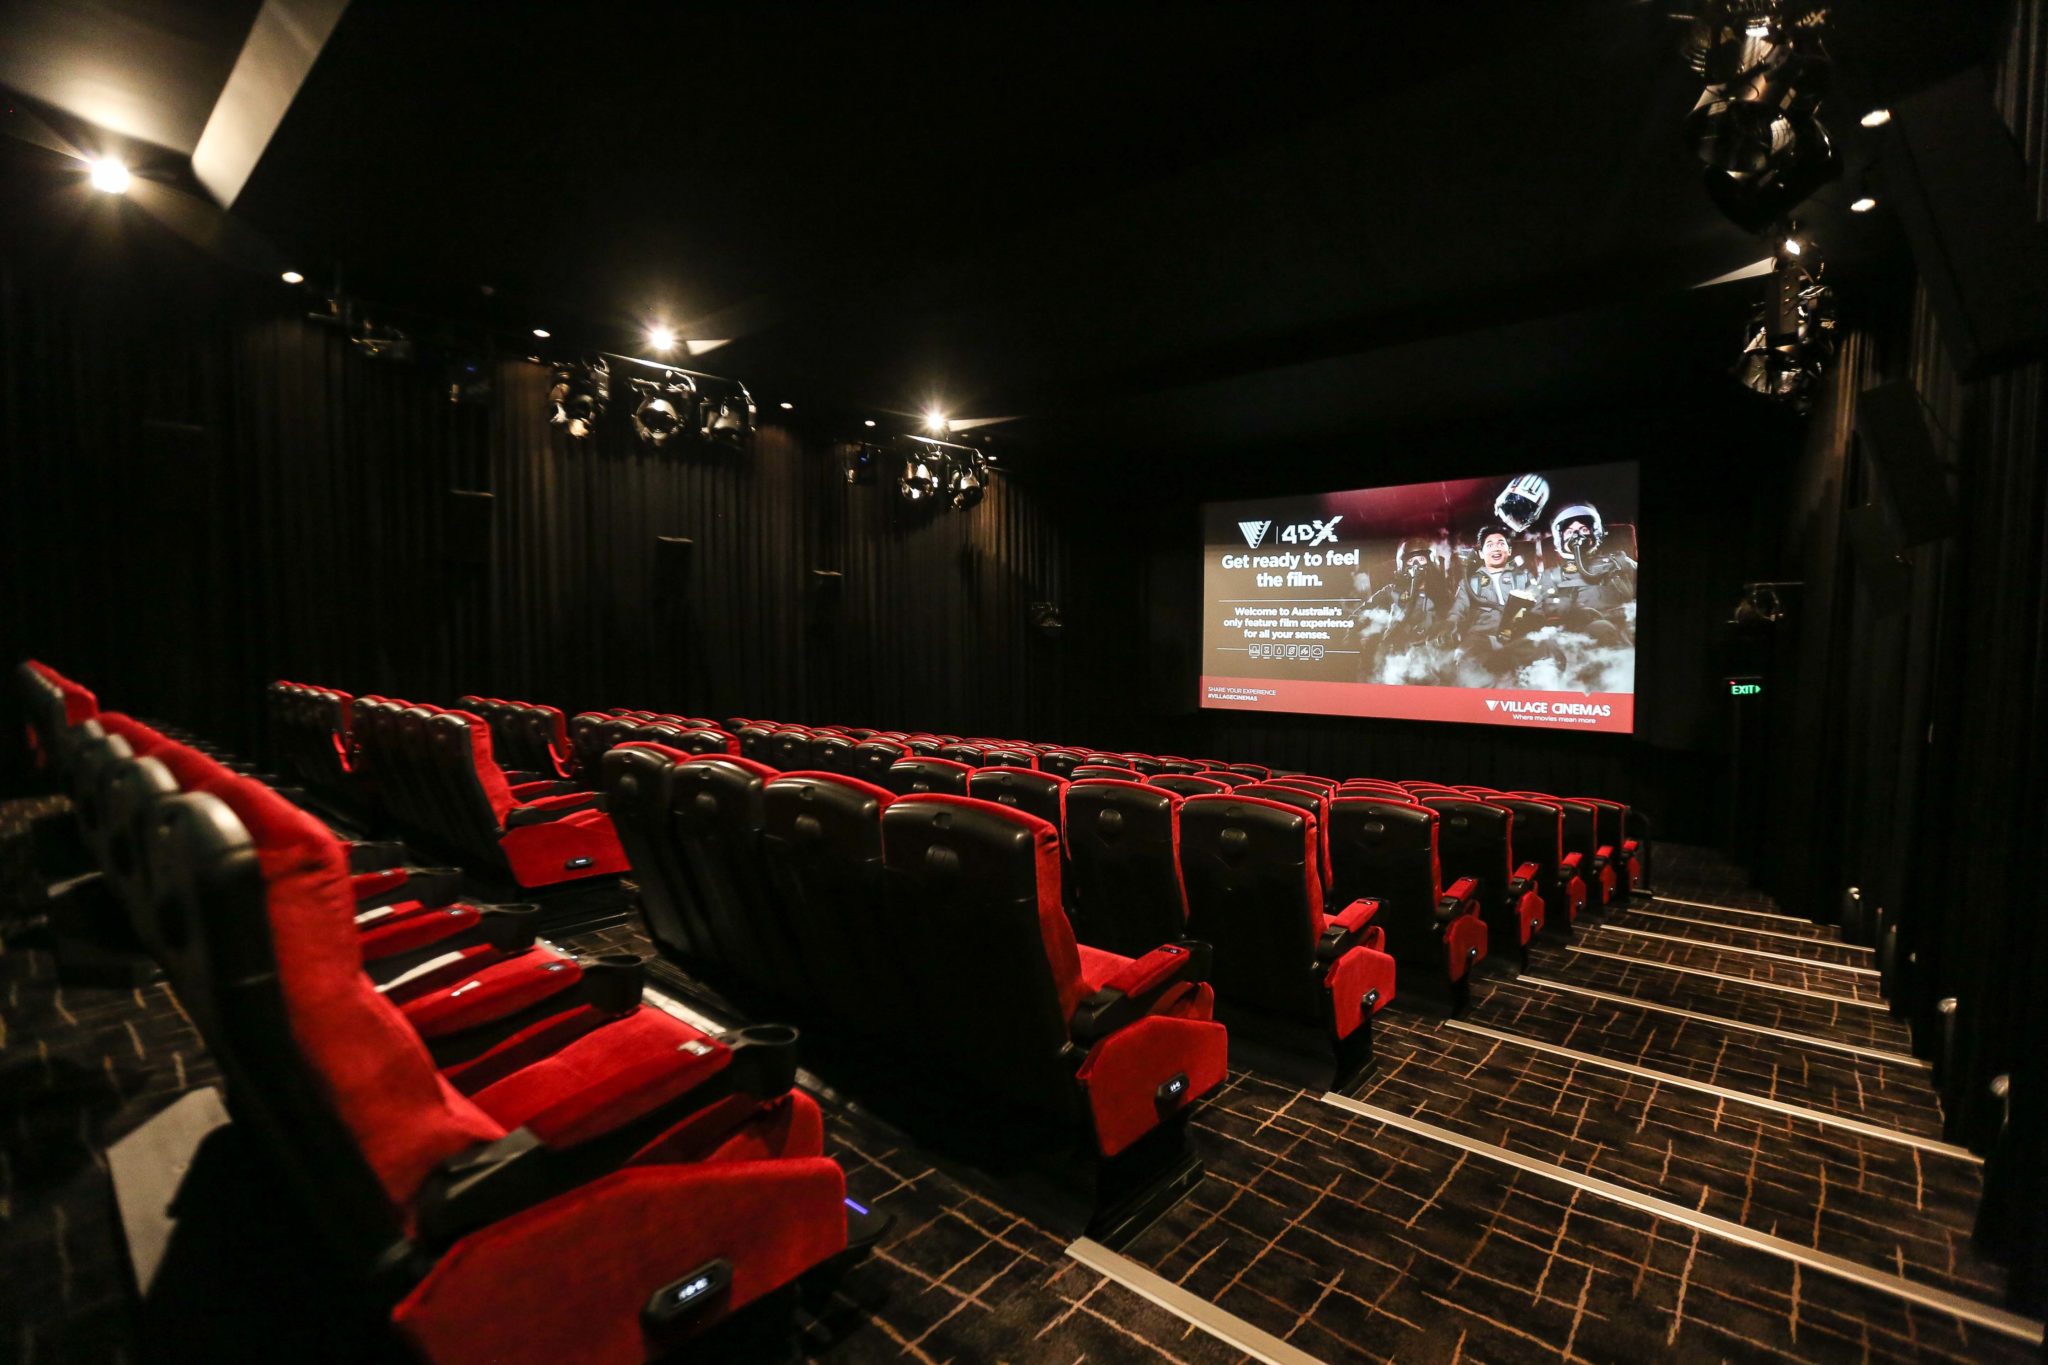 4d movie theater minneapolis